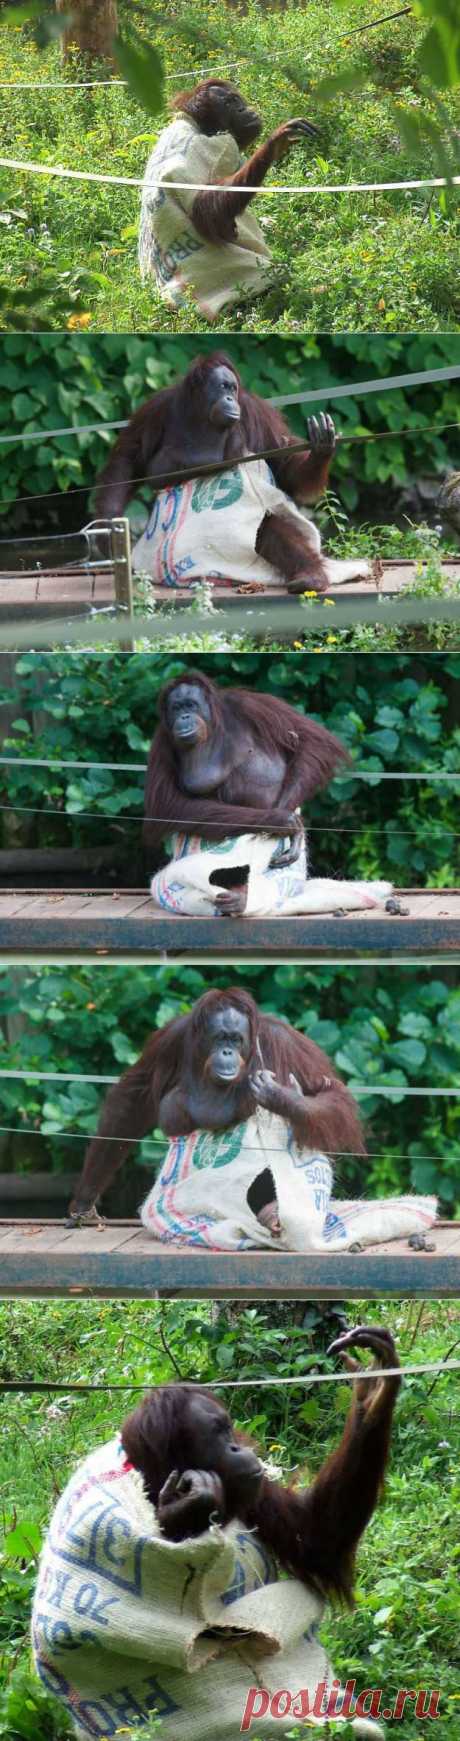 Самка орангутанга поразила посетителей зоопарка, сделав себе платье из мешка | Уши, лапы, хвост